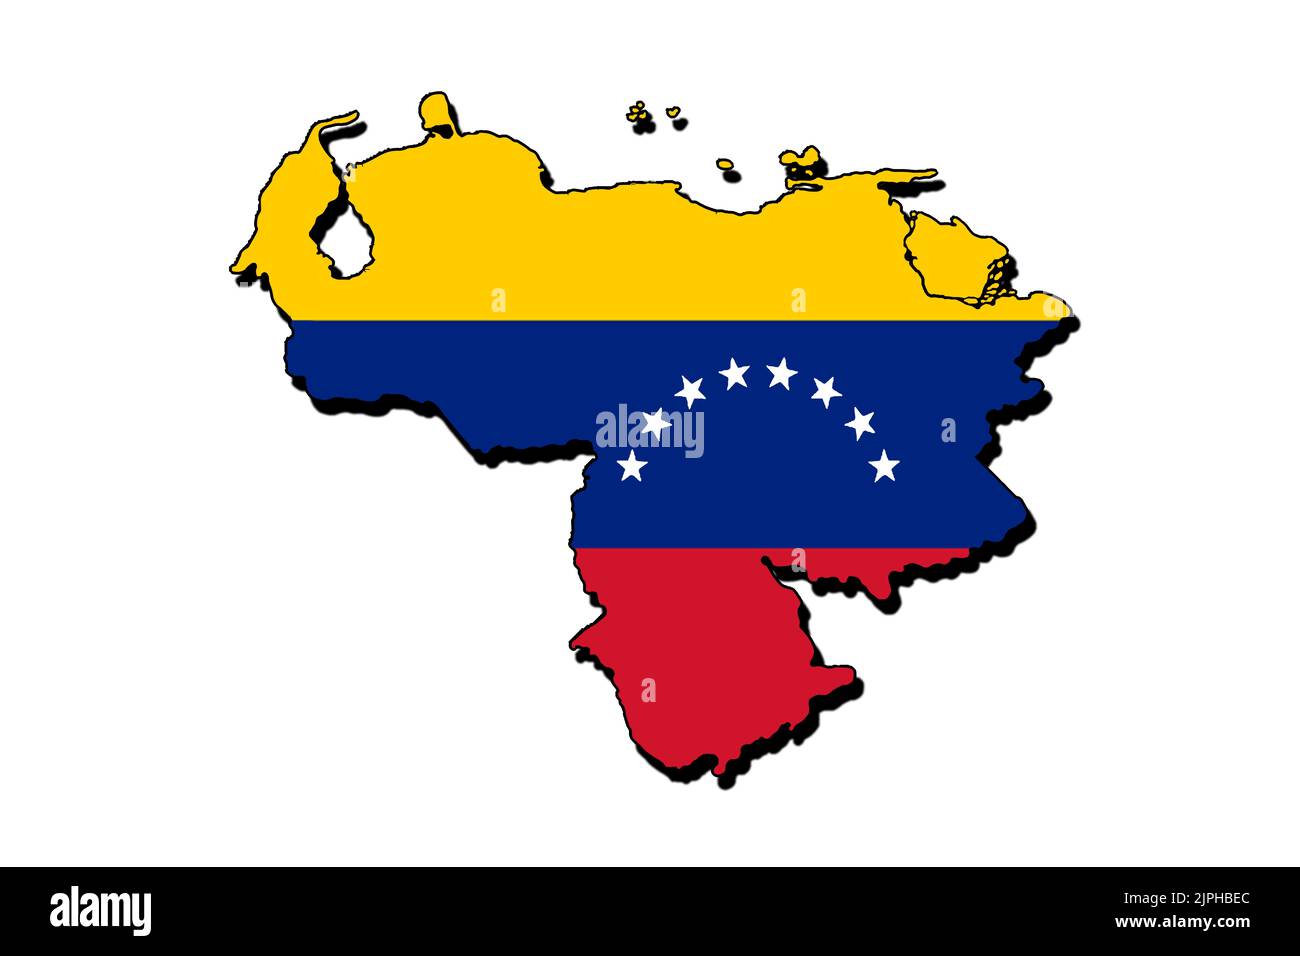 Silueta del mapa de Venezuela con su bandera Foto de stock